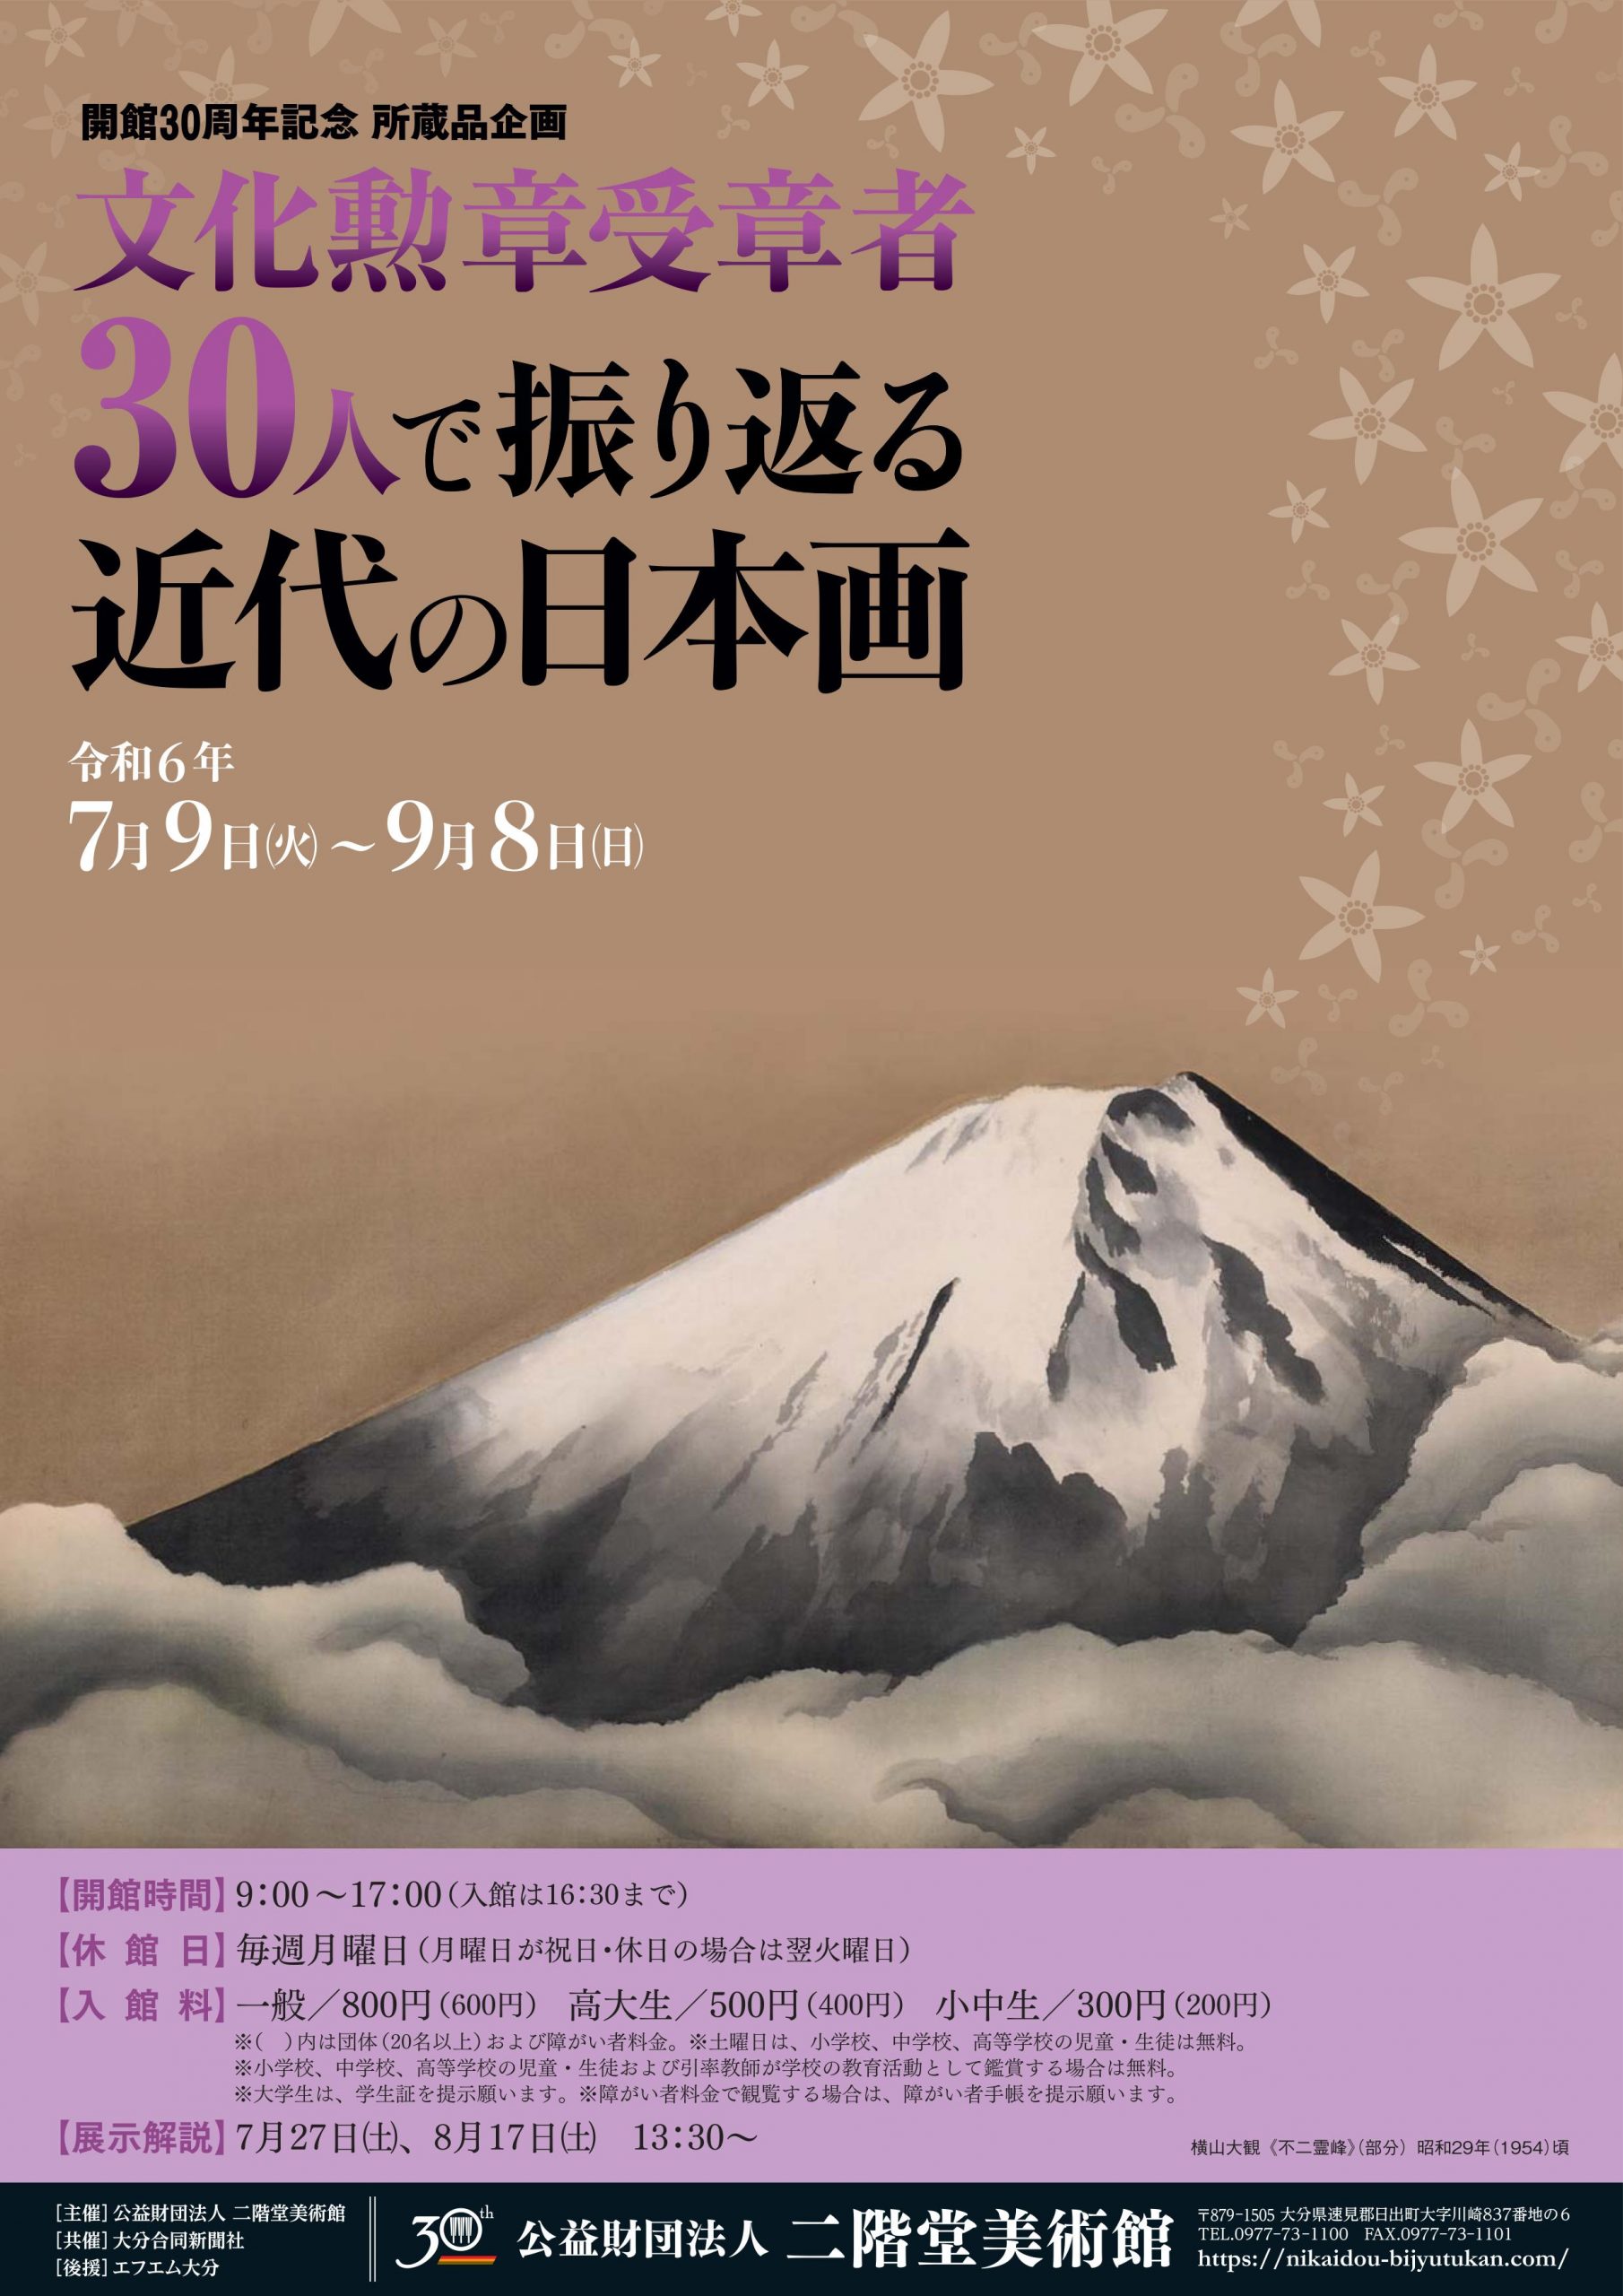 文化勲章受章者30人で振り返る近代の日本画』 | 二階堂美術館